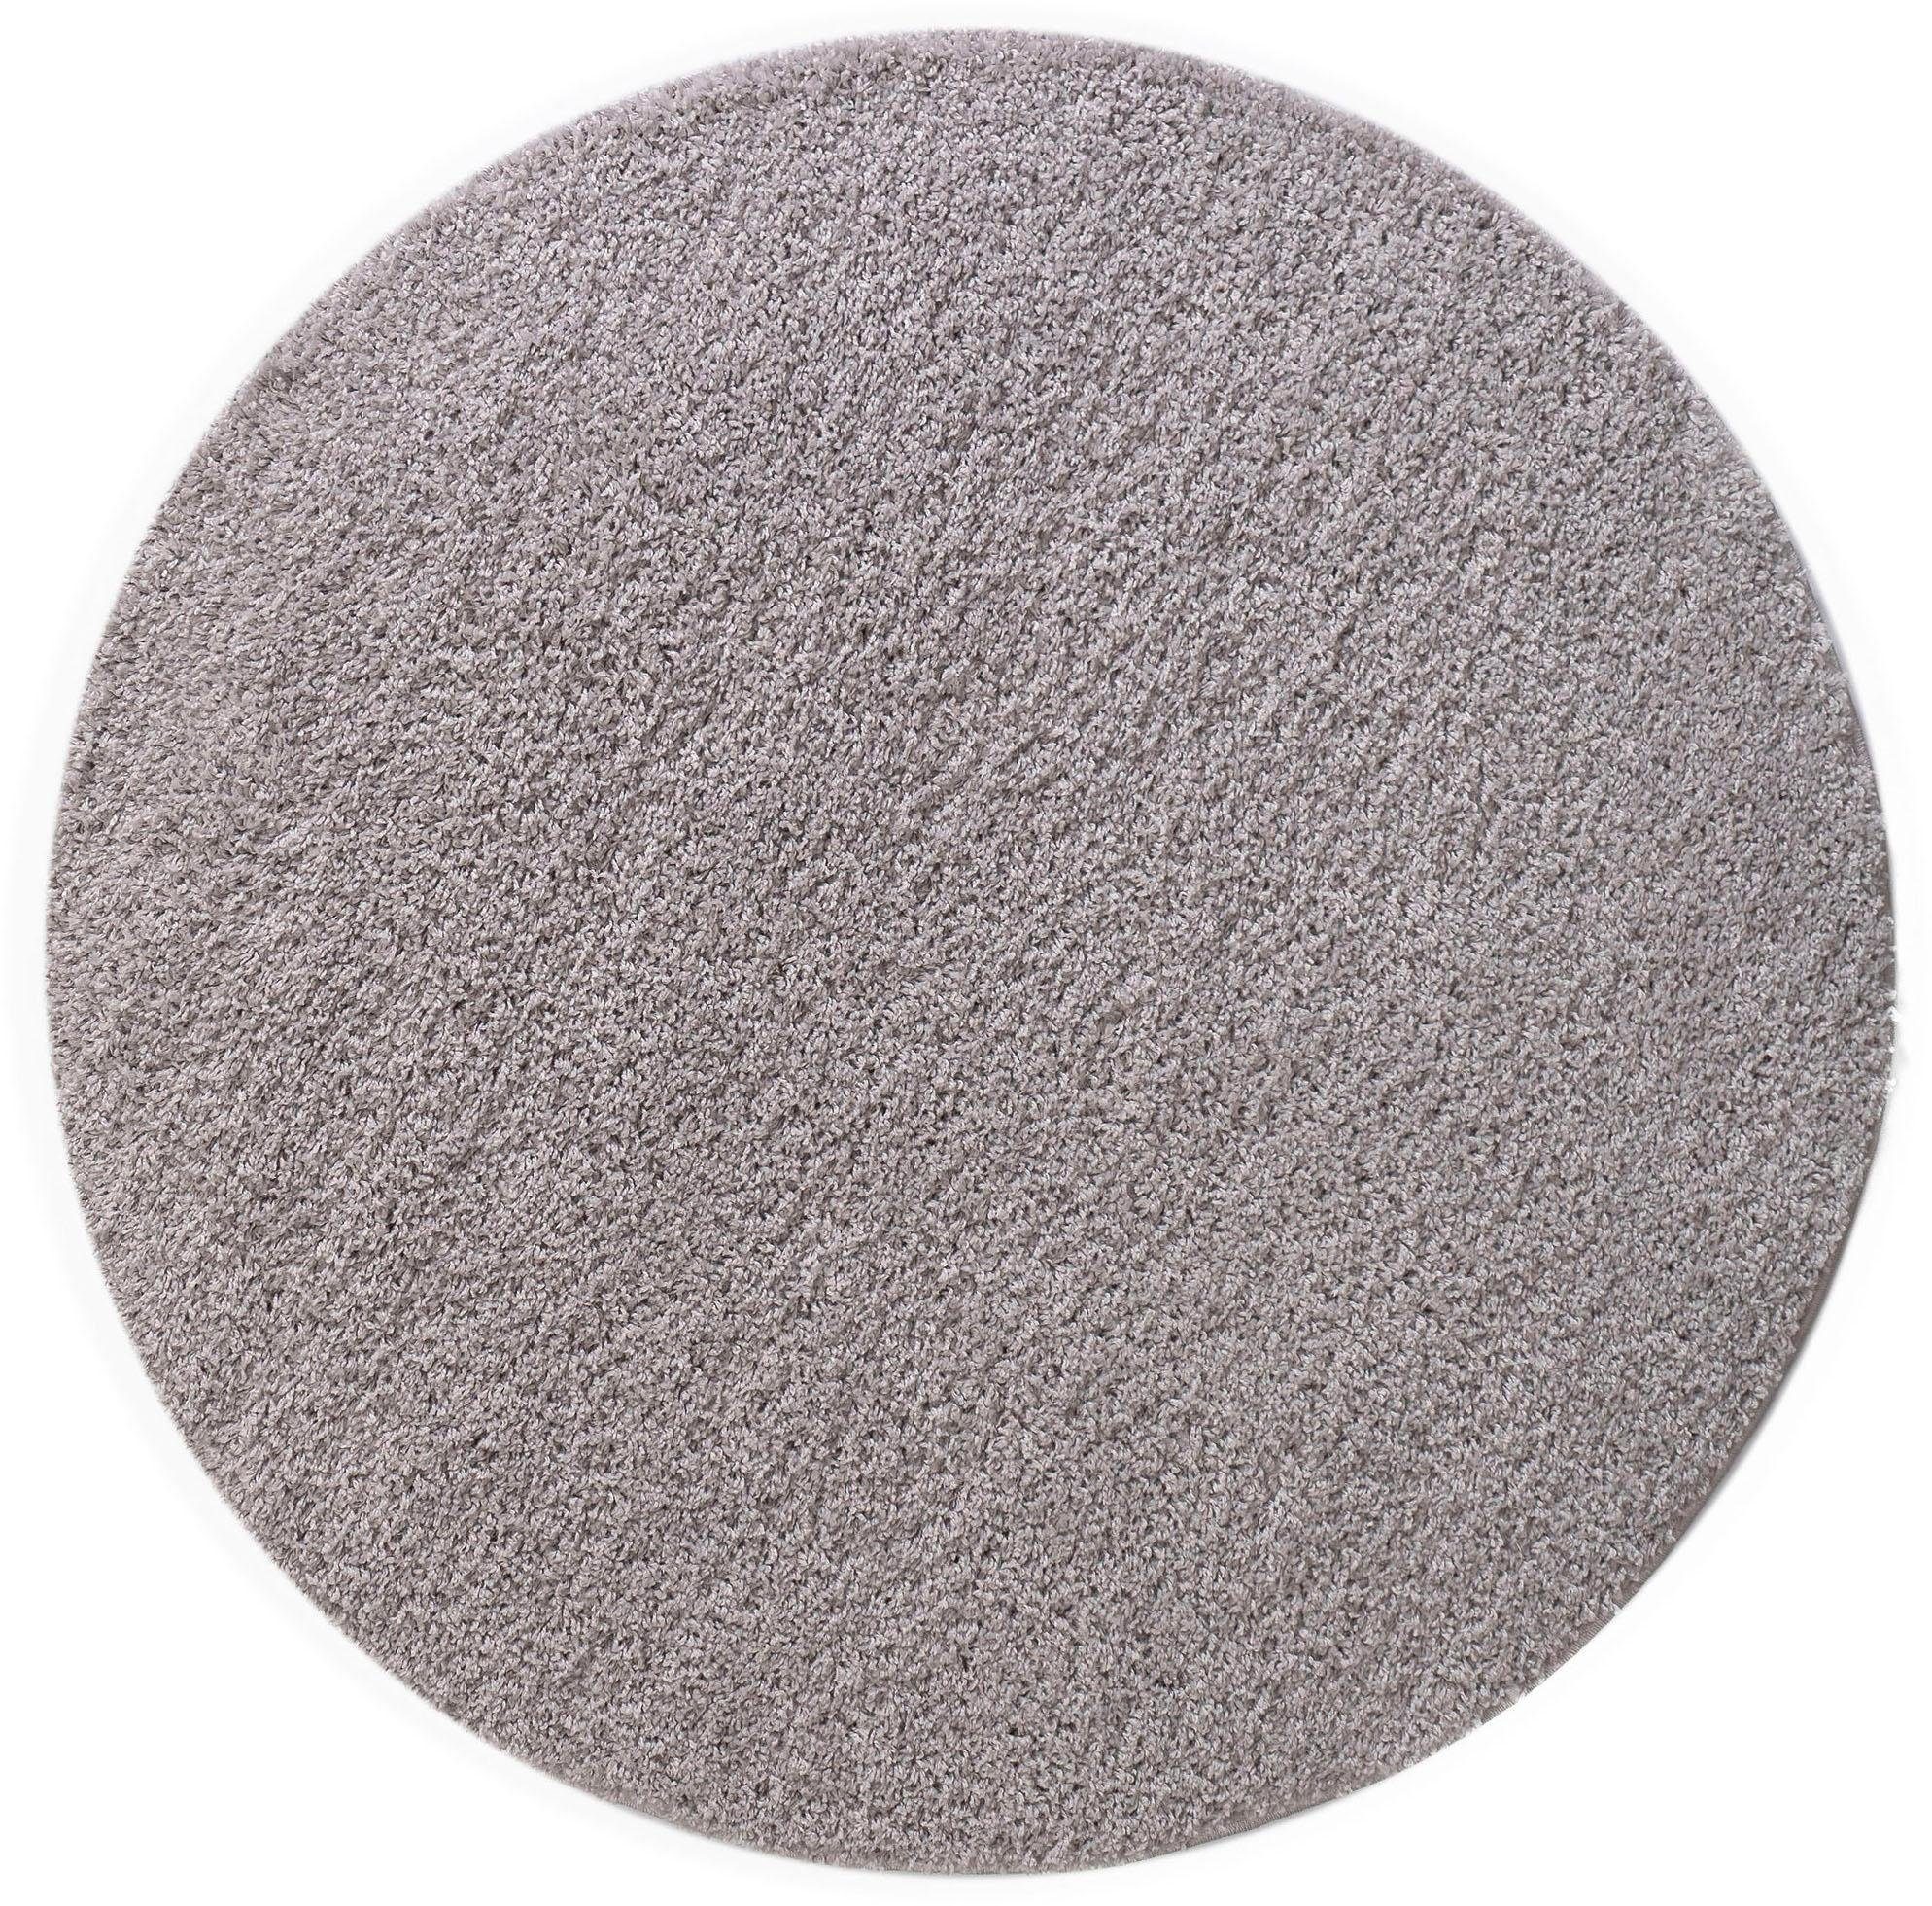 Teppich Shaggy 30, Home affaire, rund, Höhe: 30 mm, Teppich in Uni-Farben, besonders weich und kuschelig silberfarben